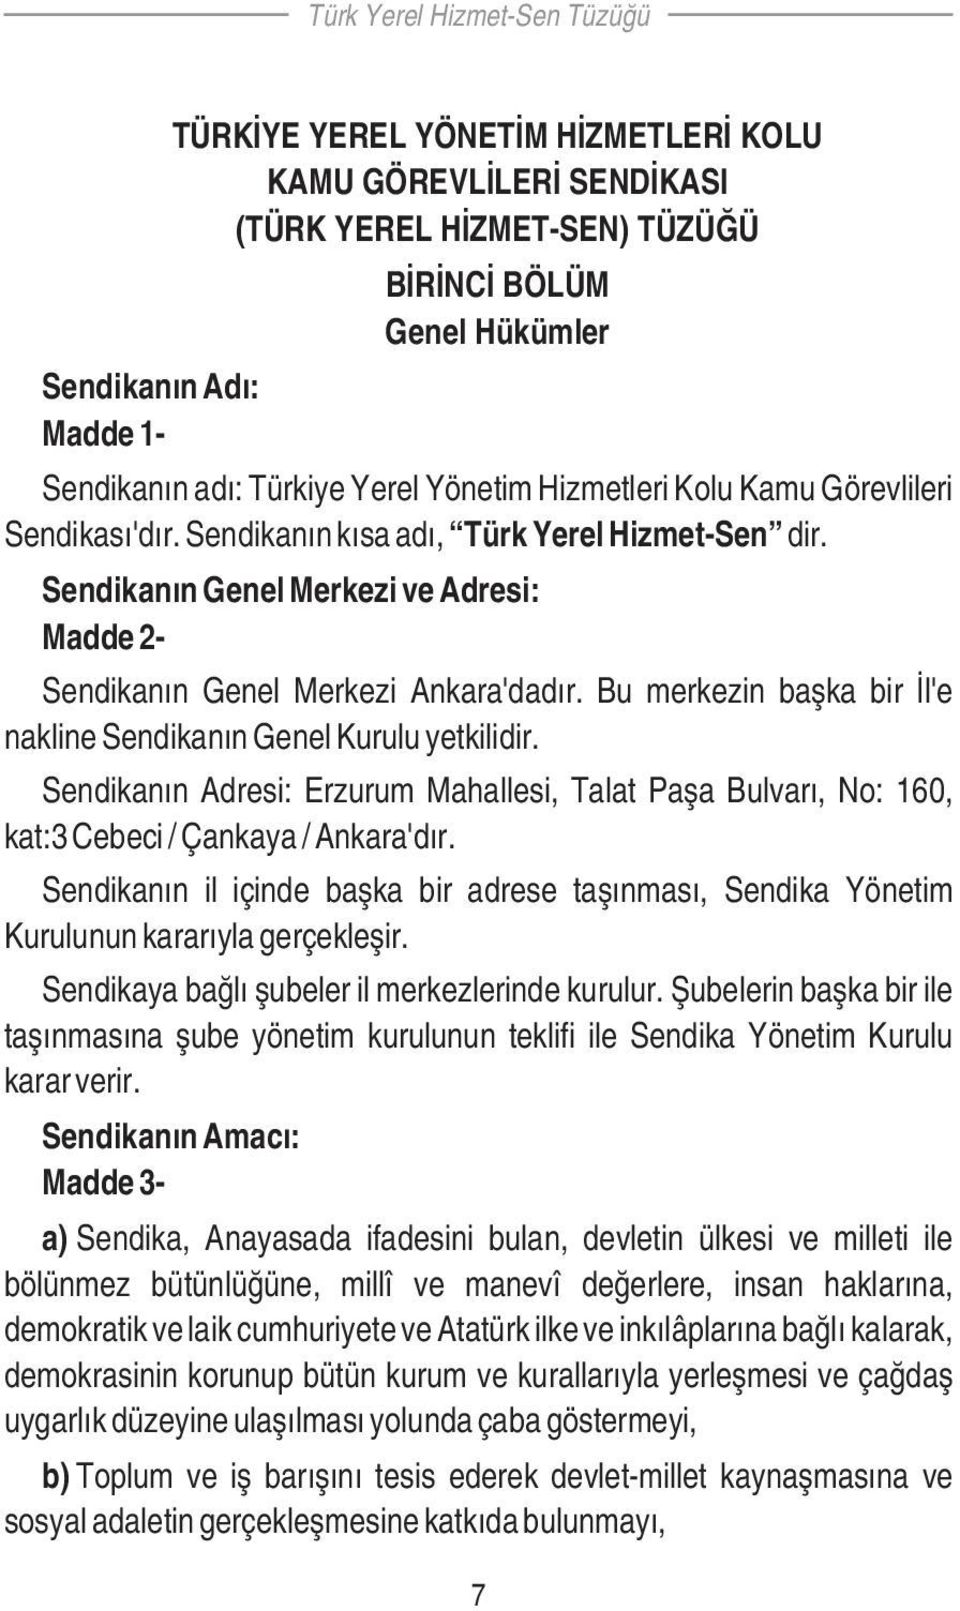 Bu merkezin başka bir İl'e nakline Sendikanın Genel Kurulu yetkilidir. Sendikanın Adresi: Erzurum Mahallesi, Talat Paşa Bulvarı, No: 160, kat:3 Cebeci / Çankaya / Ankara'dır.